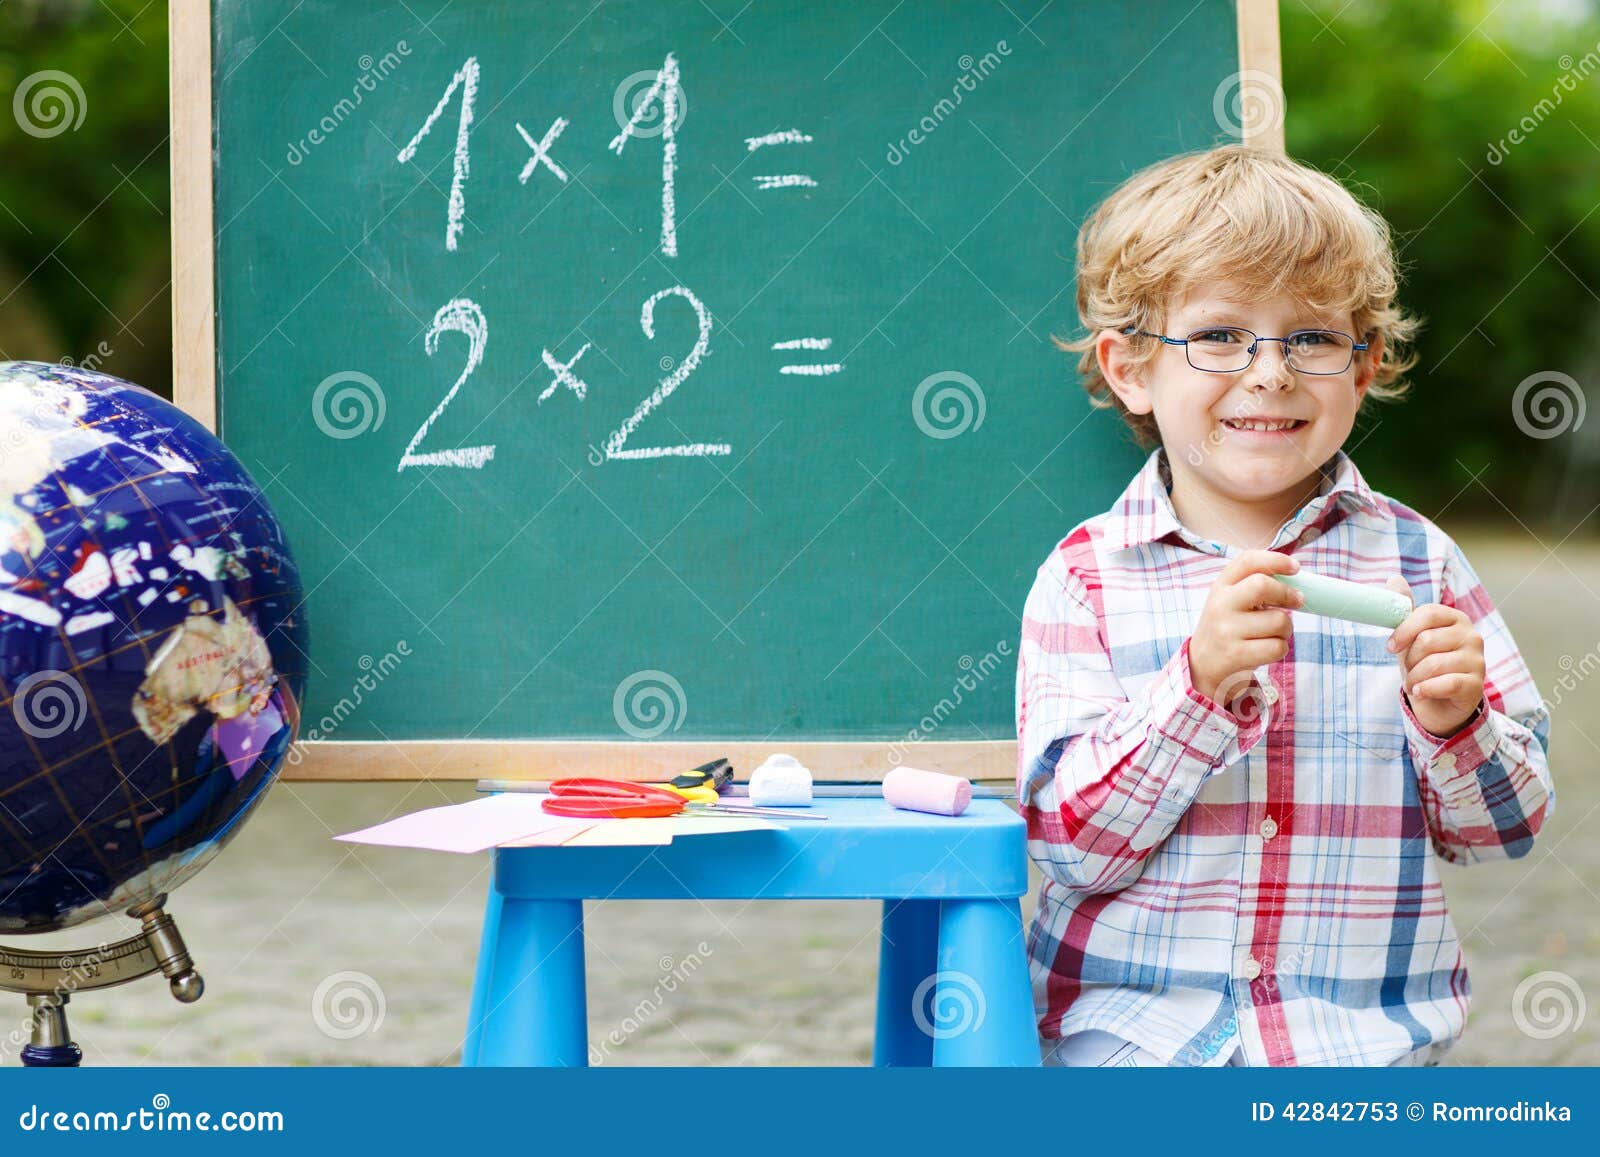 Картинки математика и дети 1 МБ